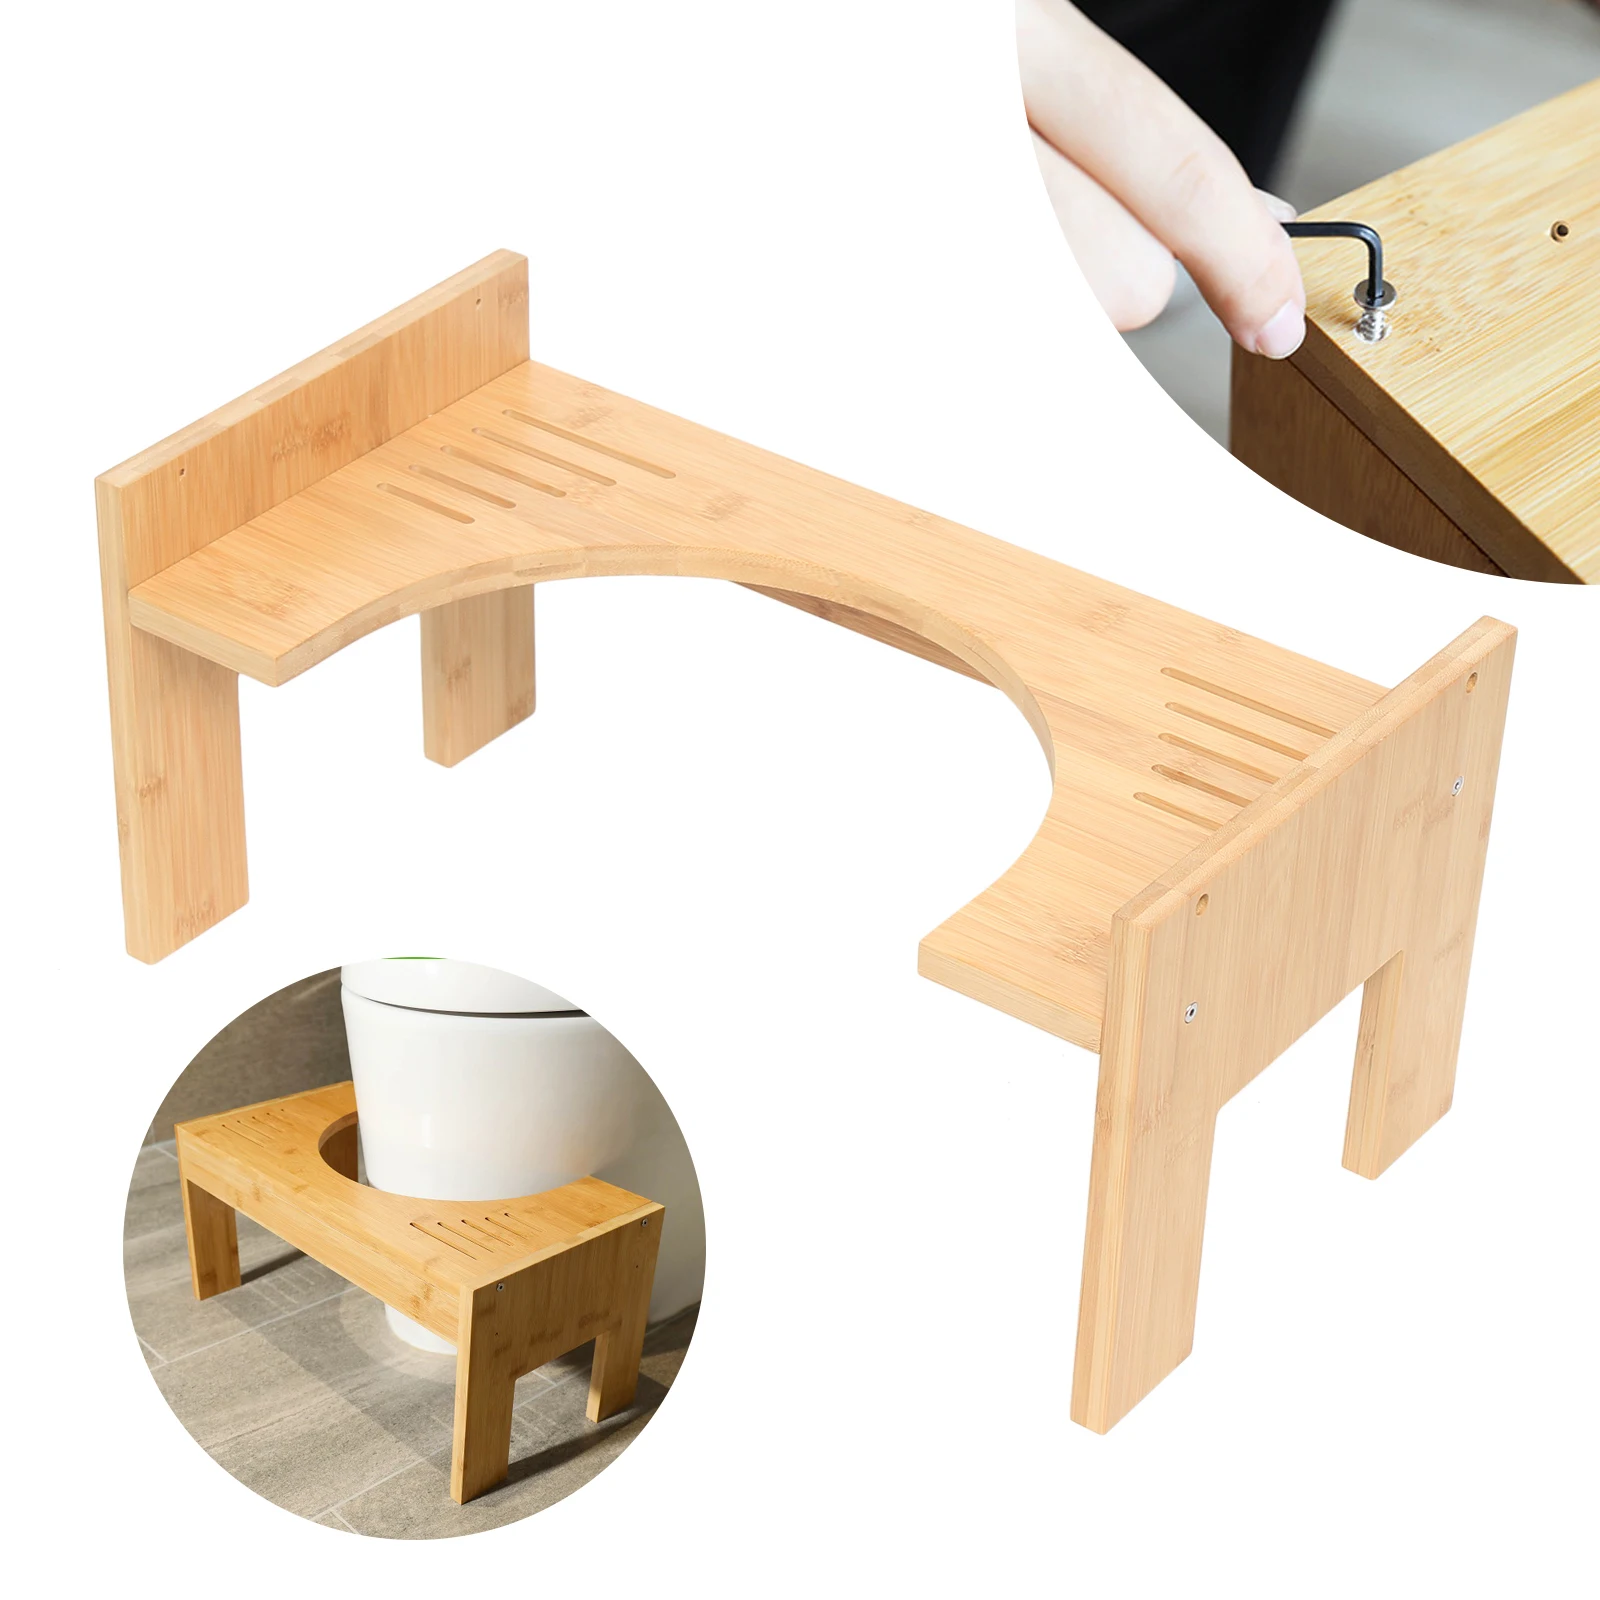 

Табурет для унитаза, безопасный нескользящий стул для ванной комнаты, бамбуковый портативный ступенчатый стул, аксессуары для ванной комнаты, противоскользящий стул для ног